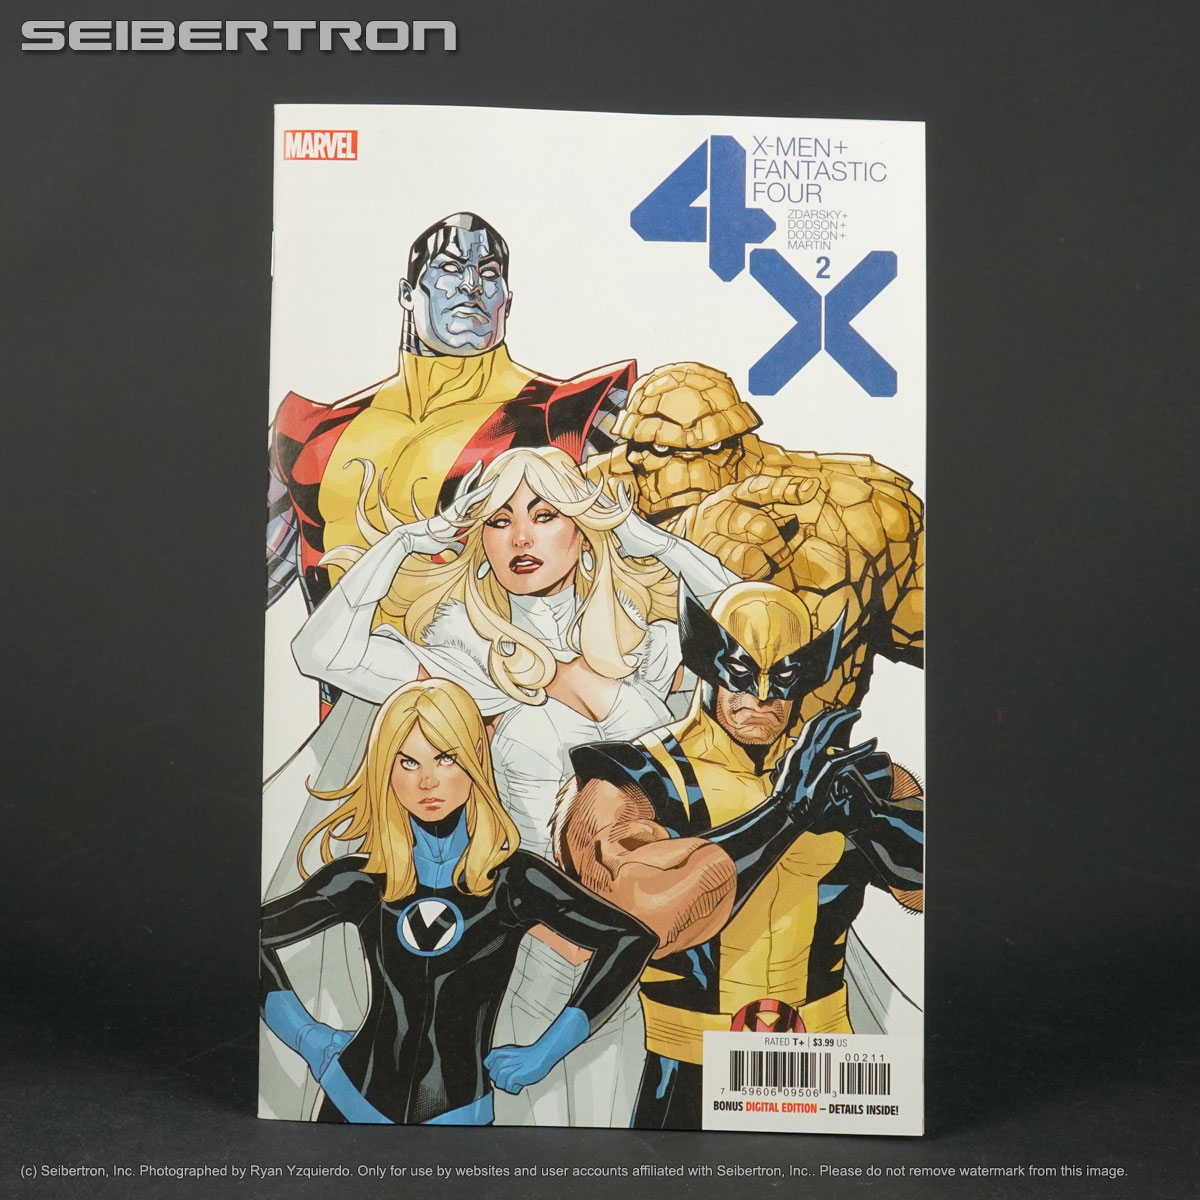 X-MEN + FANTASTIC FOUR #2 Marvel Comics 2020 (W) Zdarsky (A/CA) Dodson DEC190776